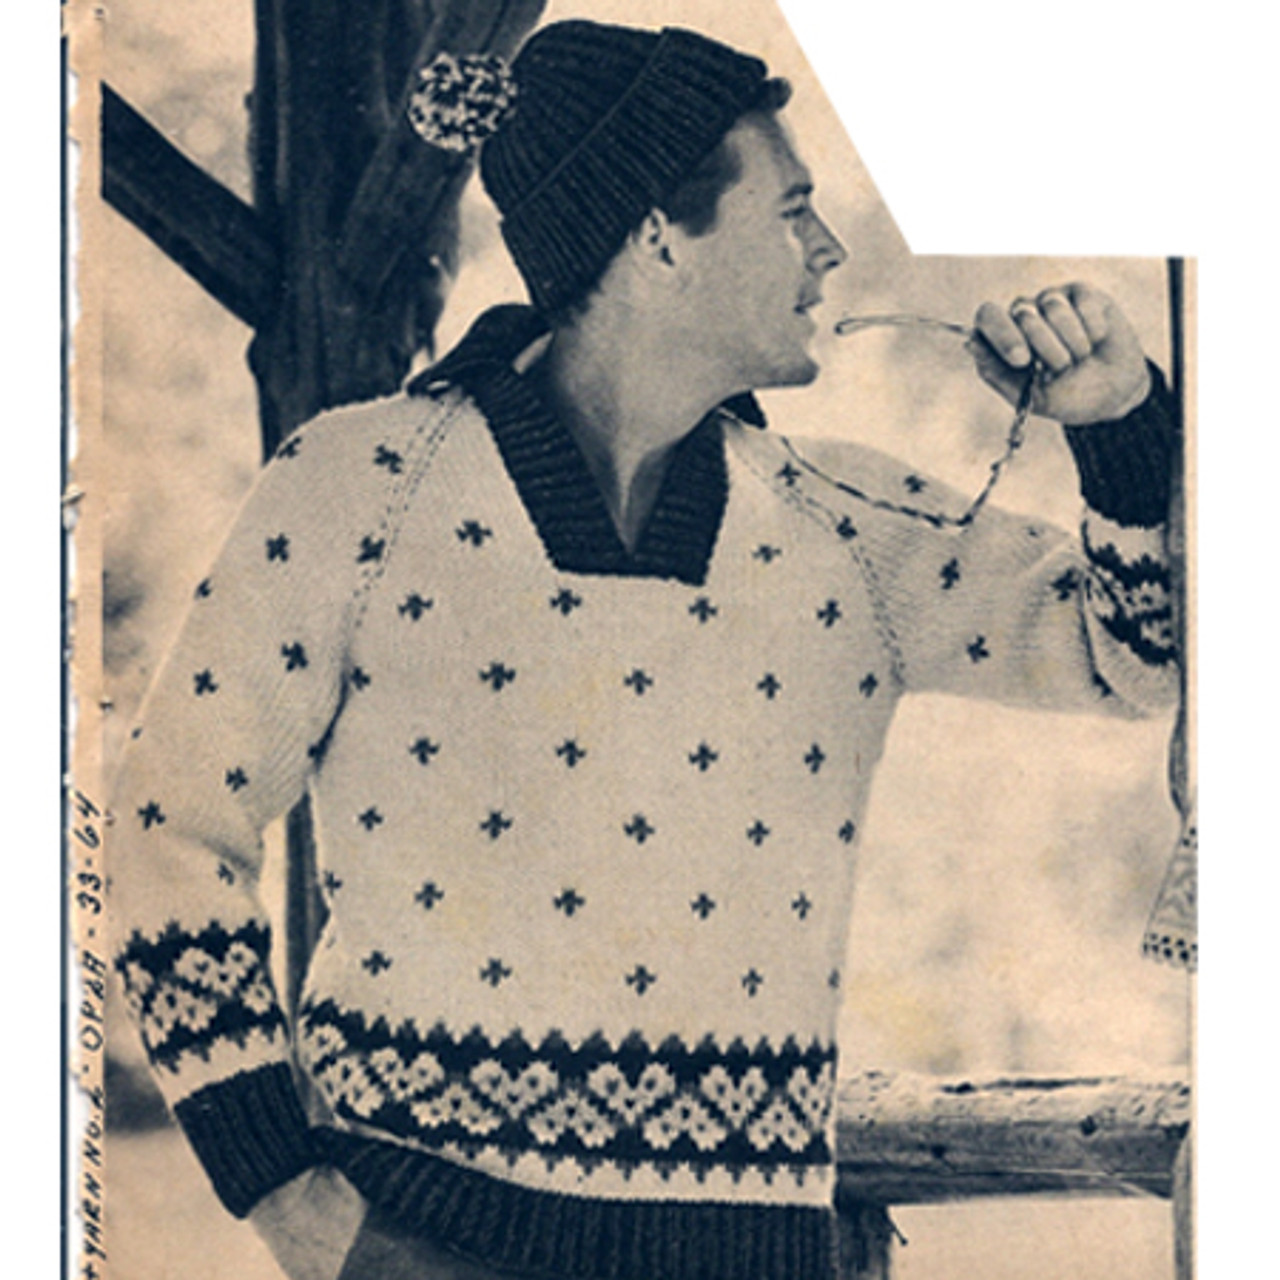 Motif Ski Sweater Knitting Pattern for Men